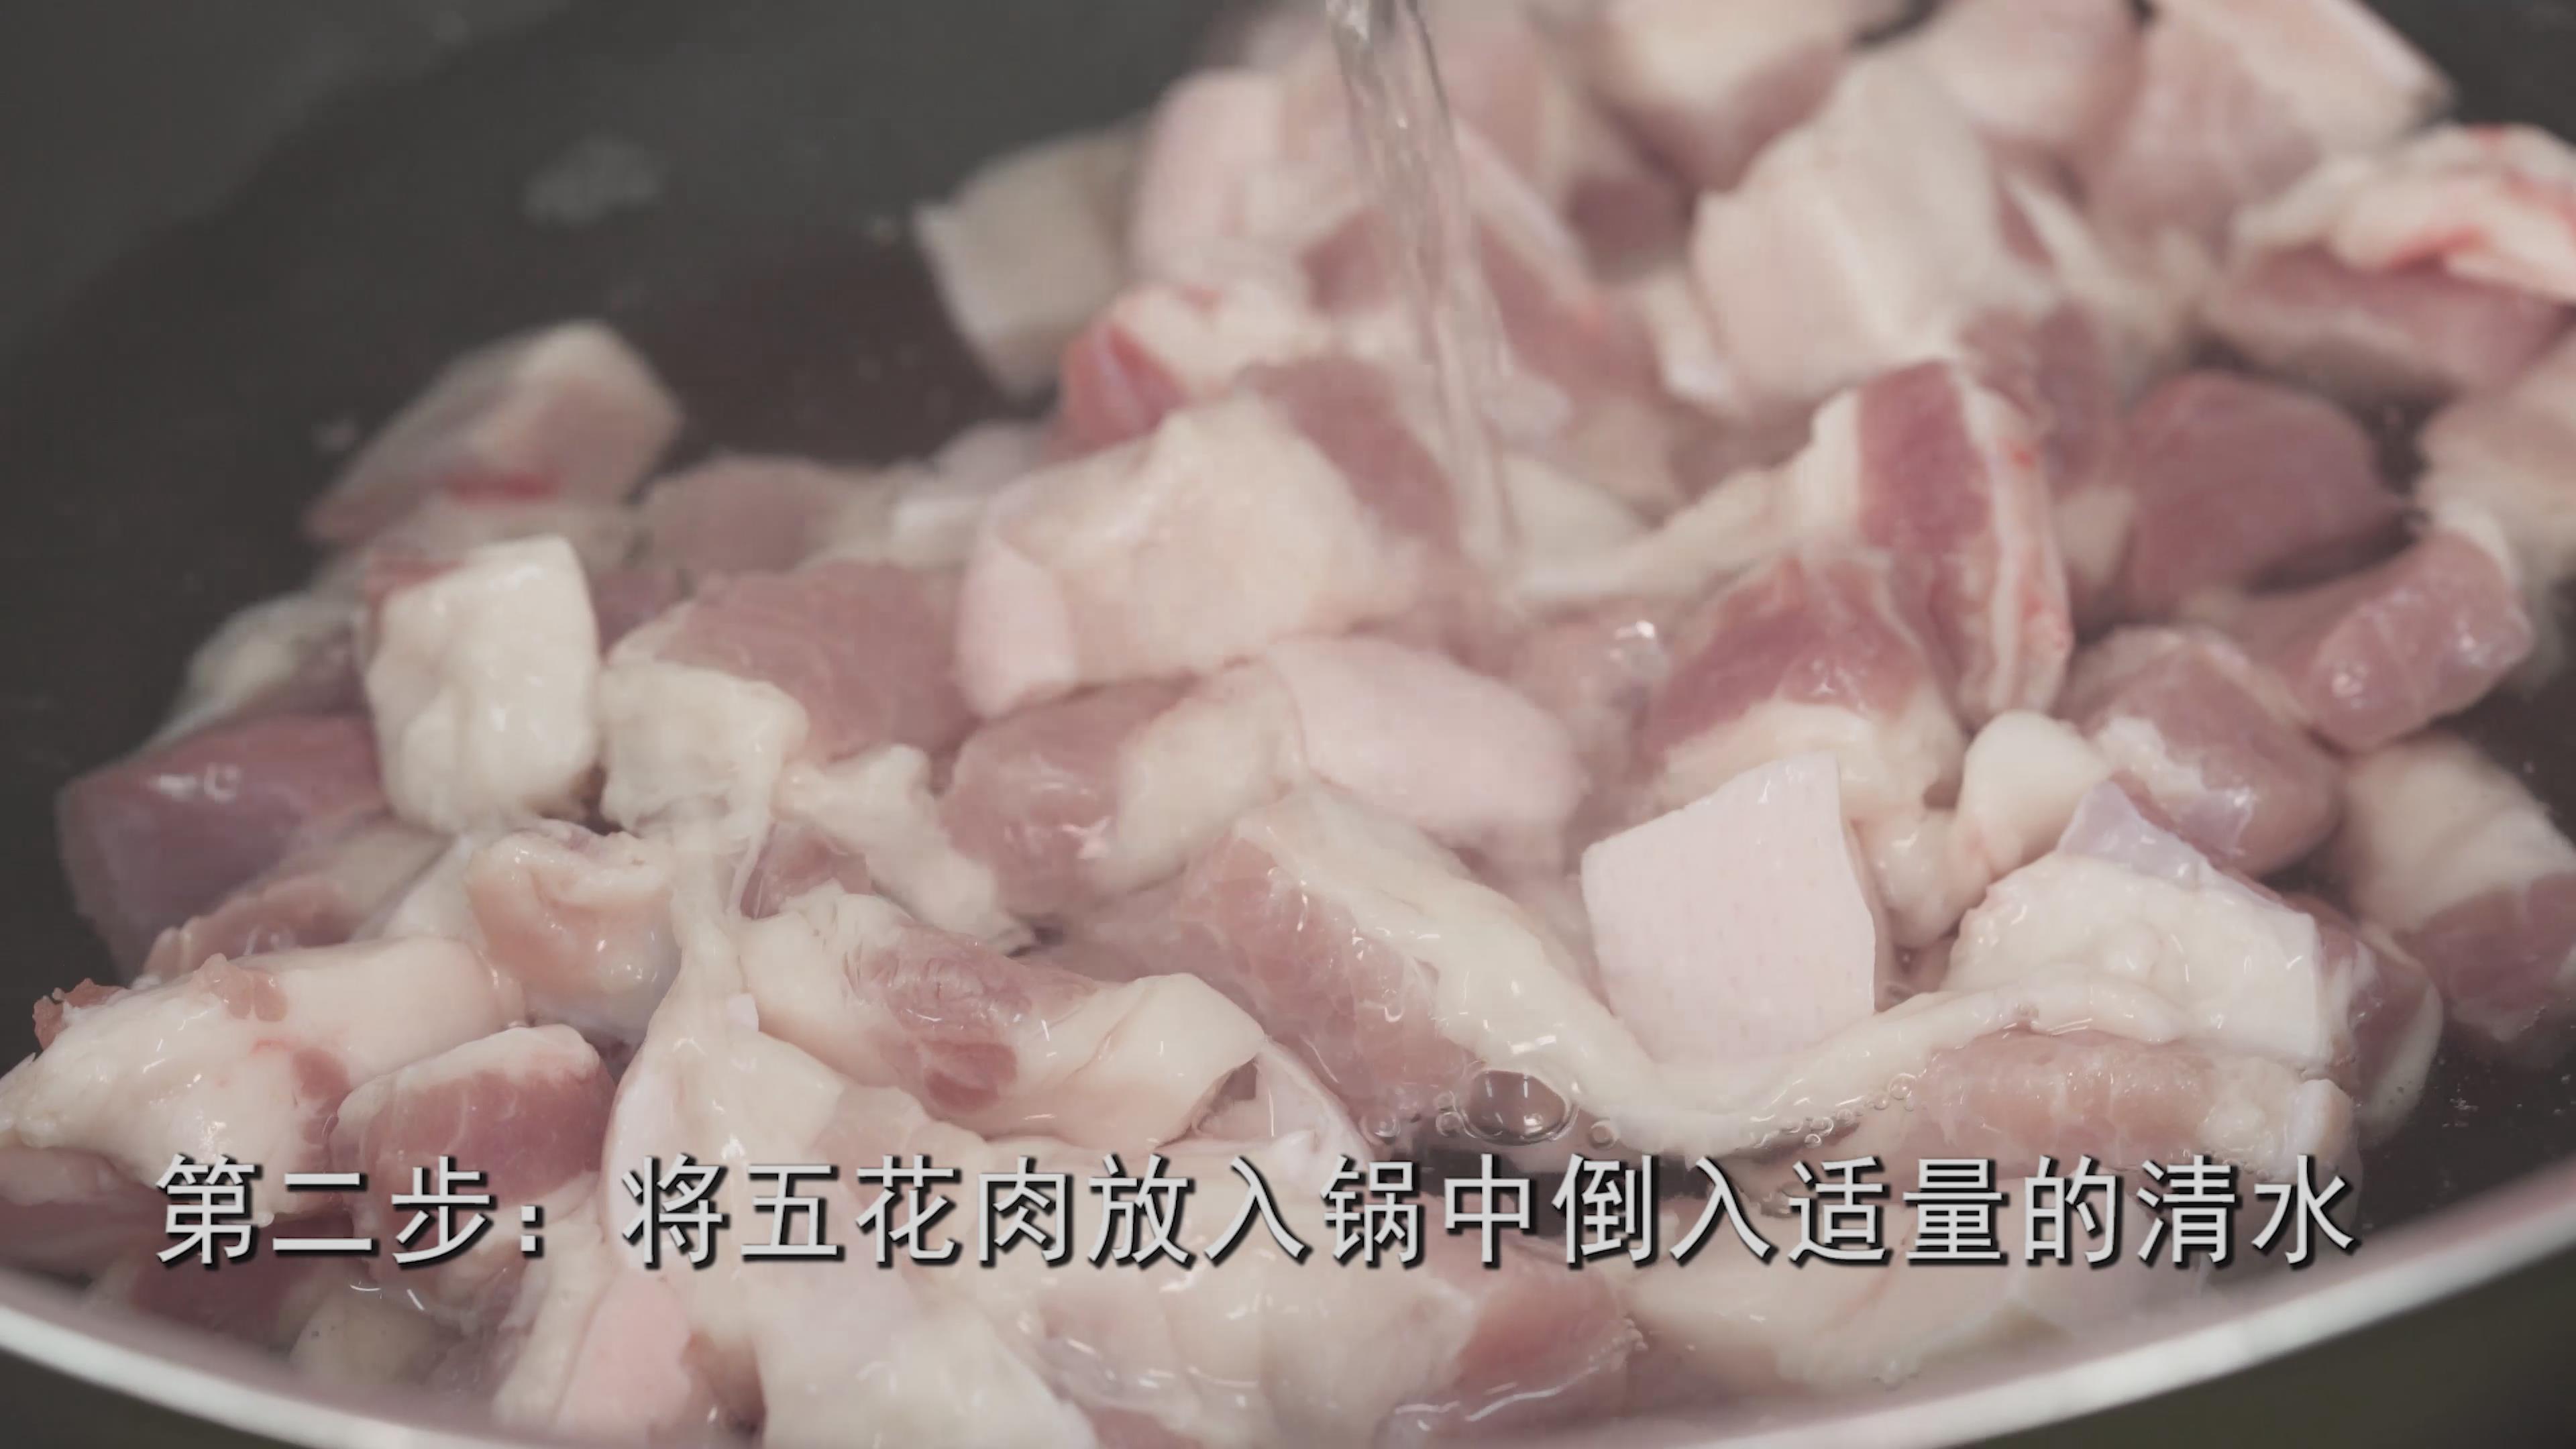 红烧肉的做法视频 红烧肉的做法视频家常